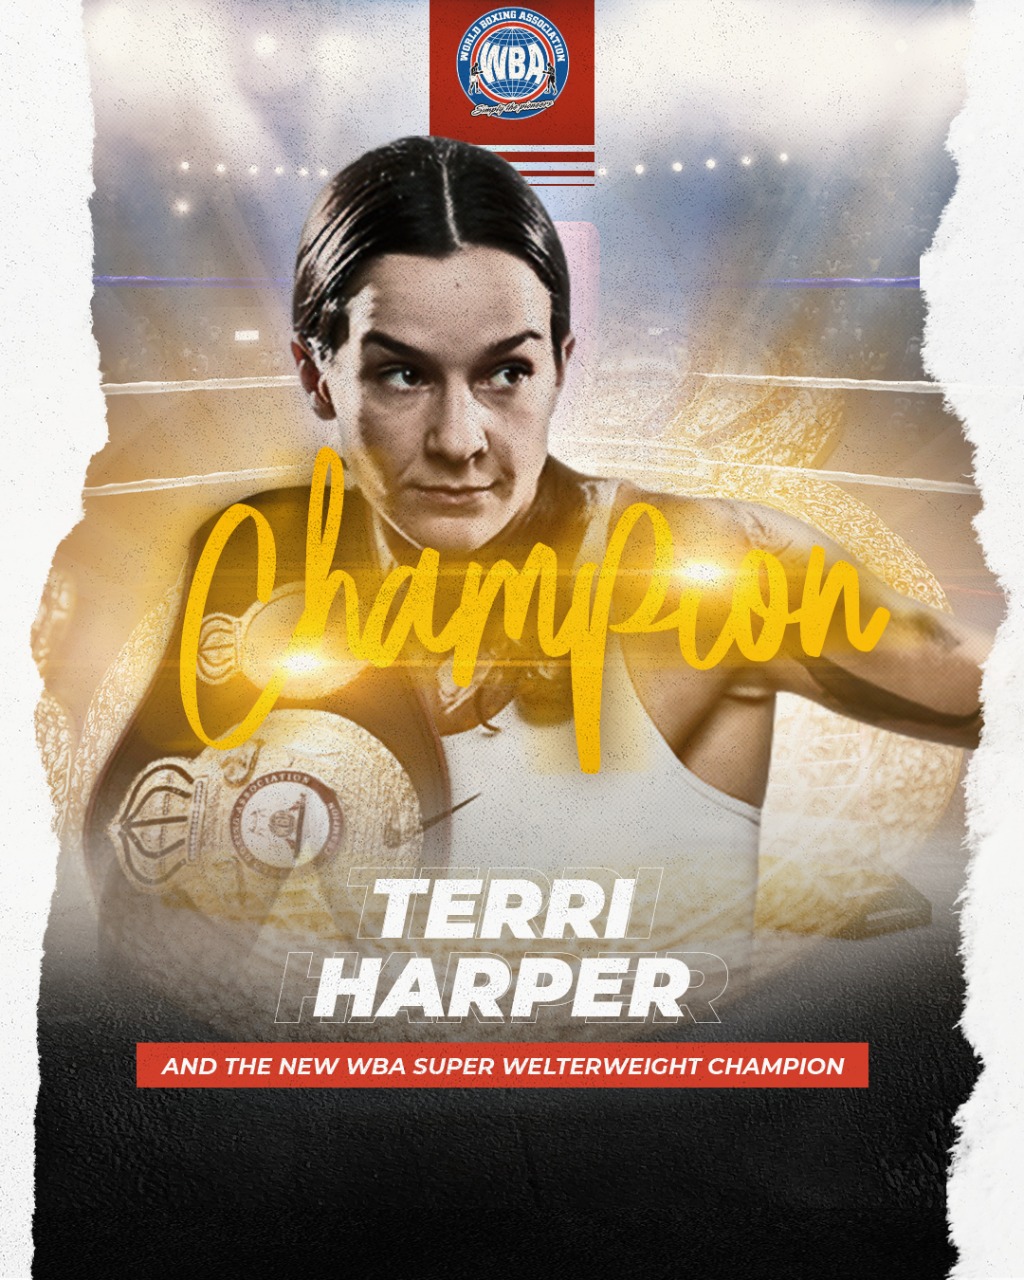 Terry Harper new WBA Super Welterweight Champion￼